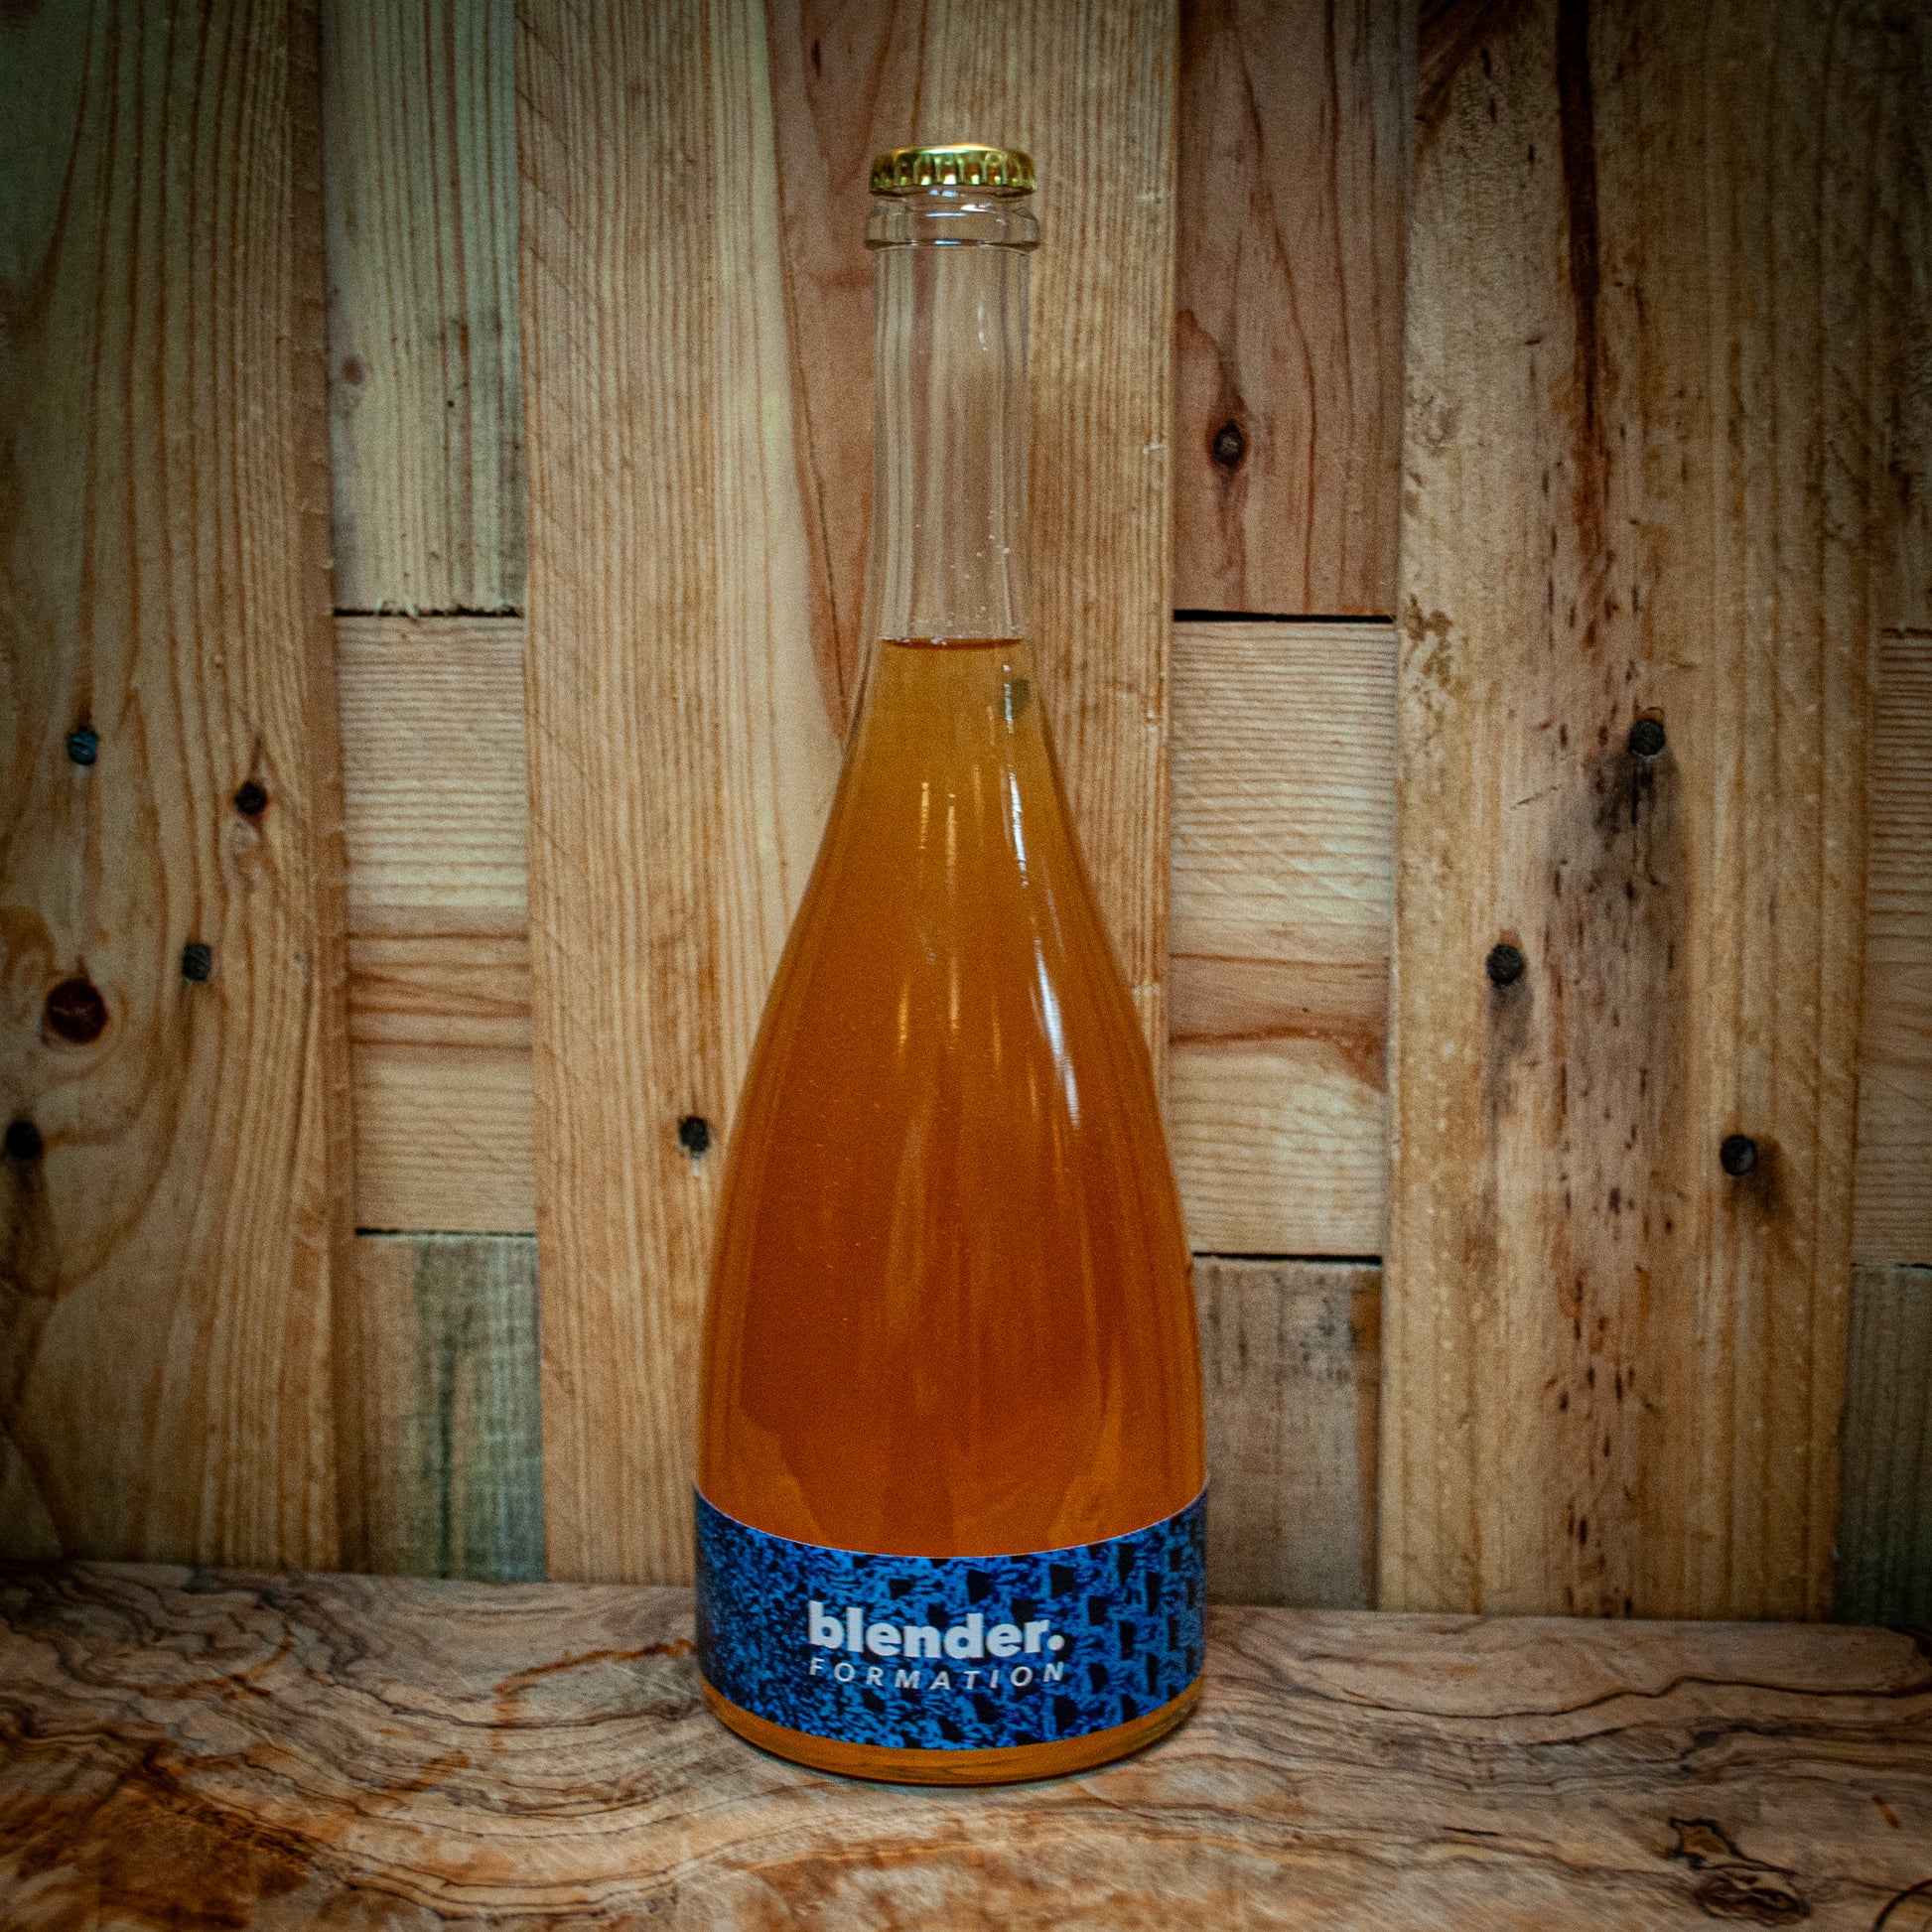 Blender. Formation Barrel Aged Saison available at Essex Spirits Co Distillery & Bottle Shop